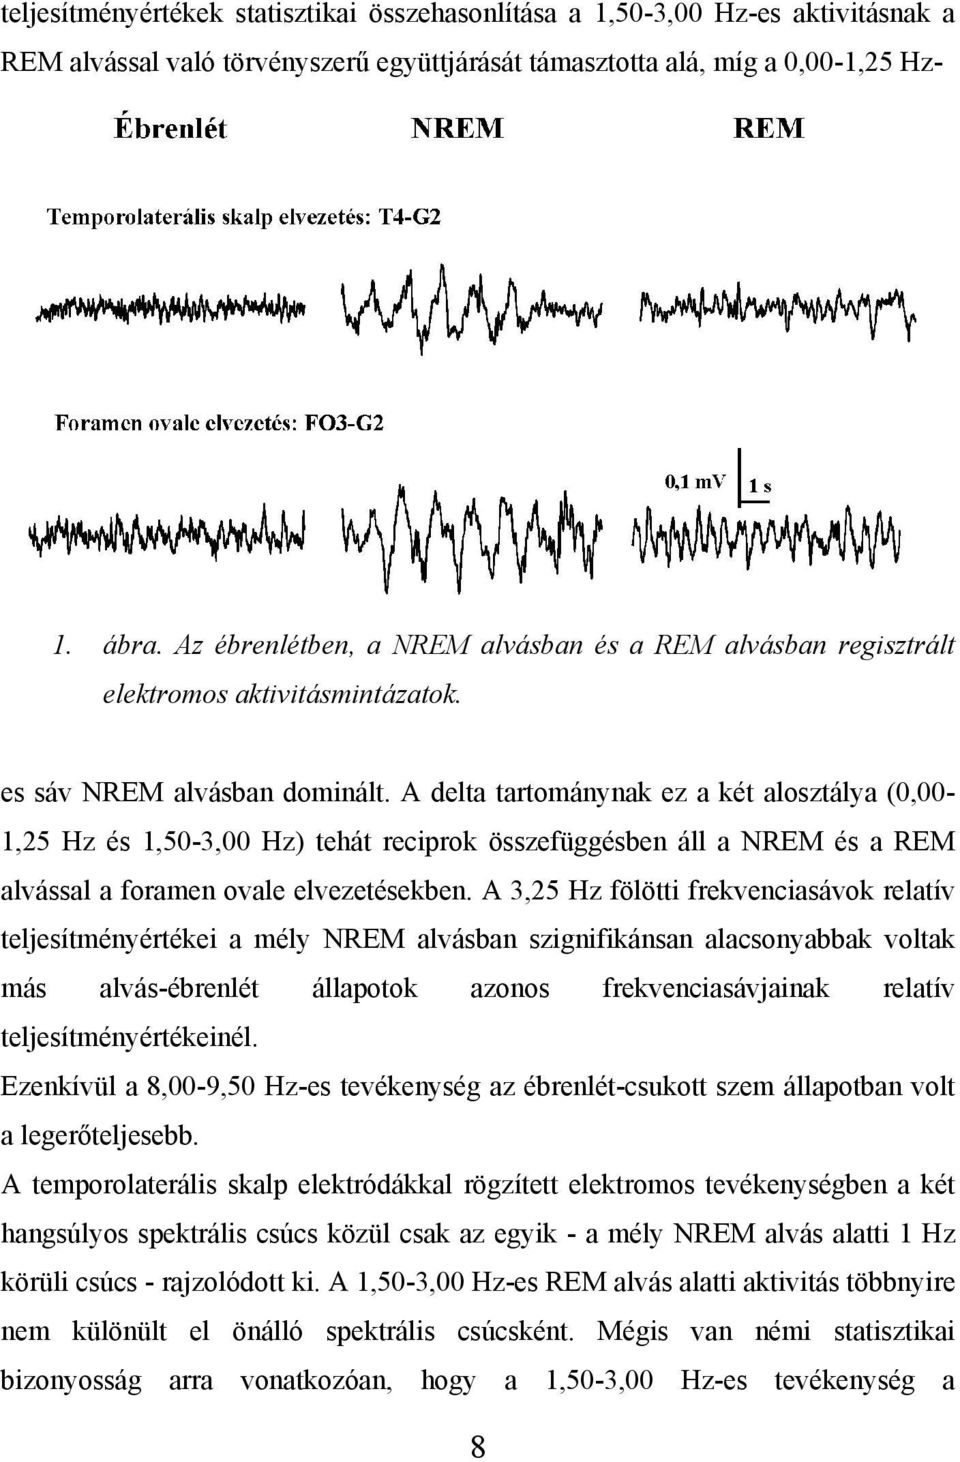 A delta tartománynak ez a két alosztálya (0,00-1,25 Hz és 1,50-3,00 Hz) tehát reciprok összefüggésben áll a NREM és a REM alvással a foramen ovale elvezetésekben.